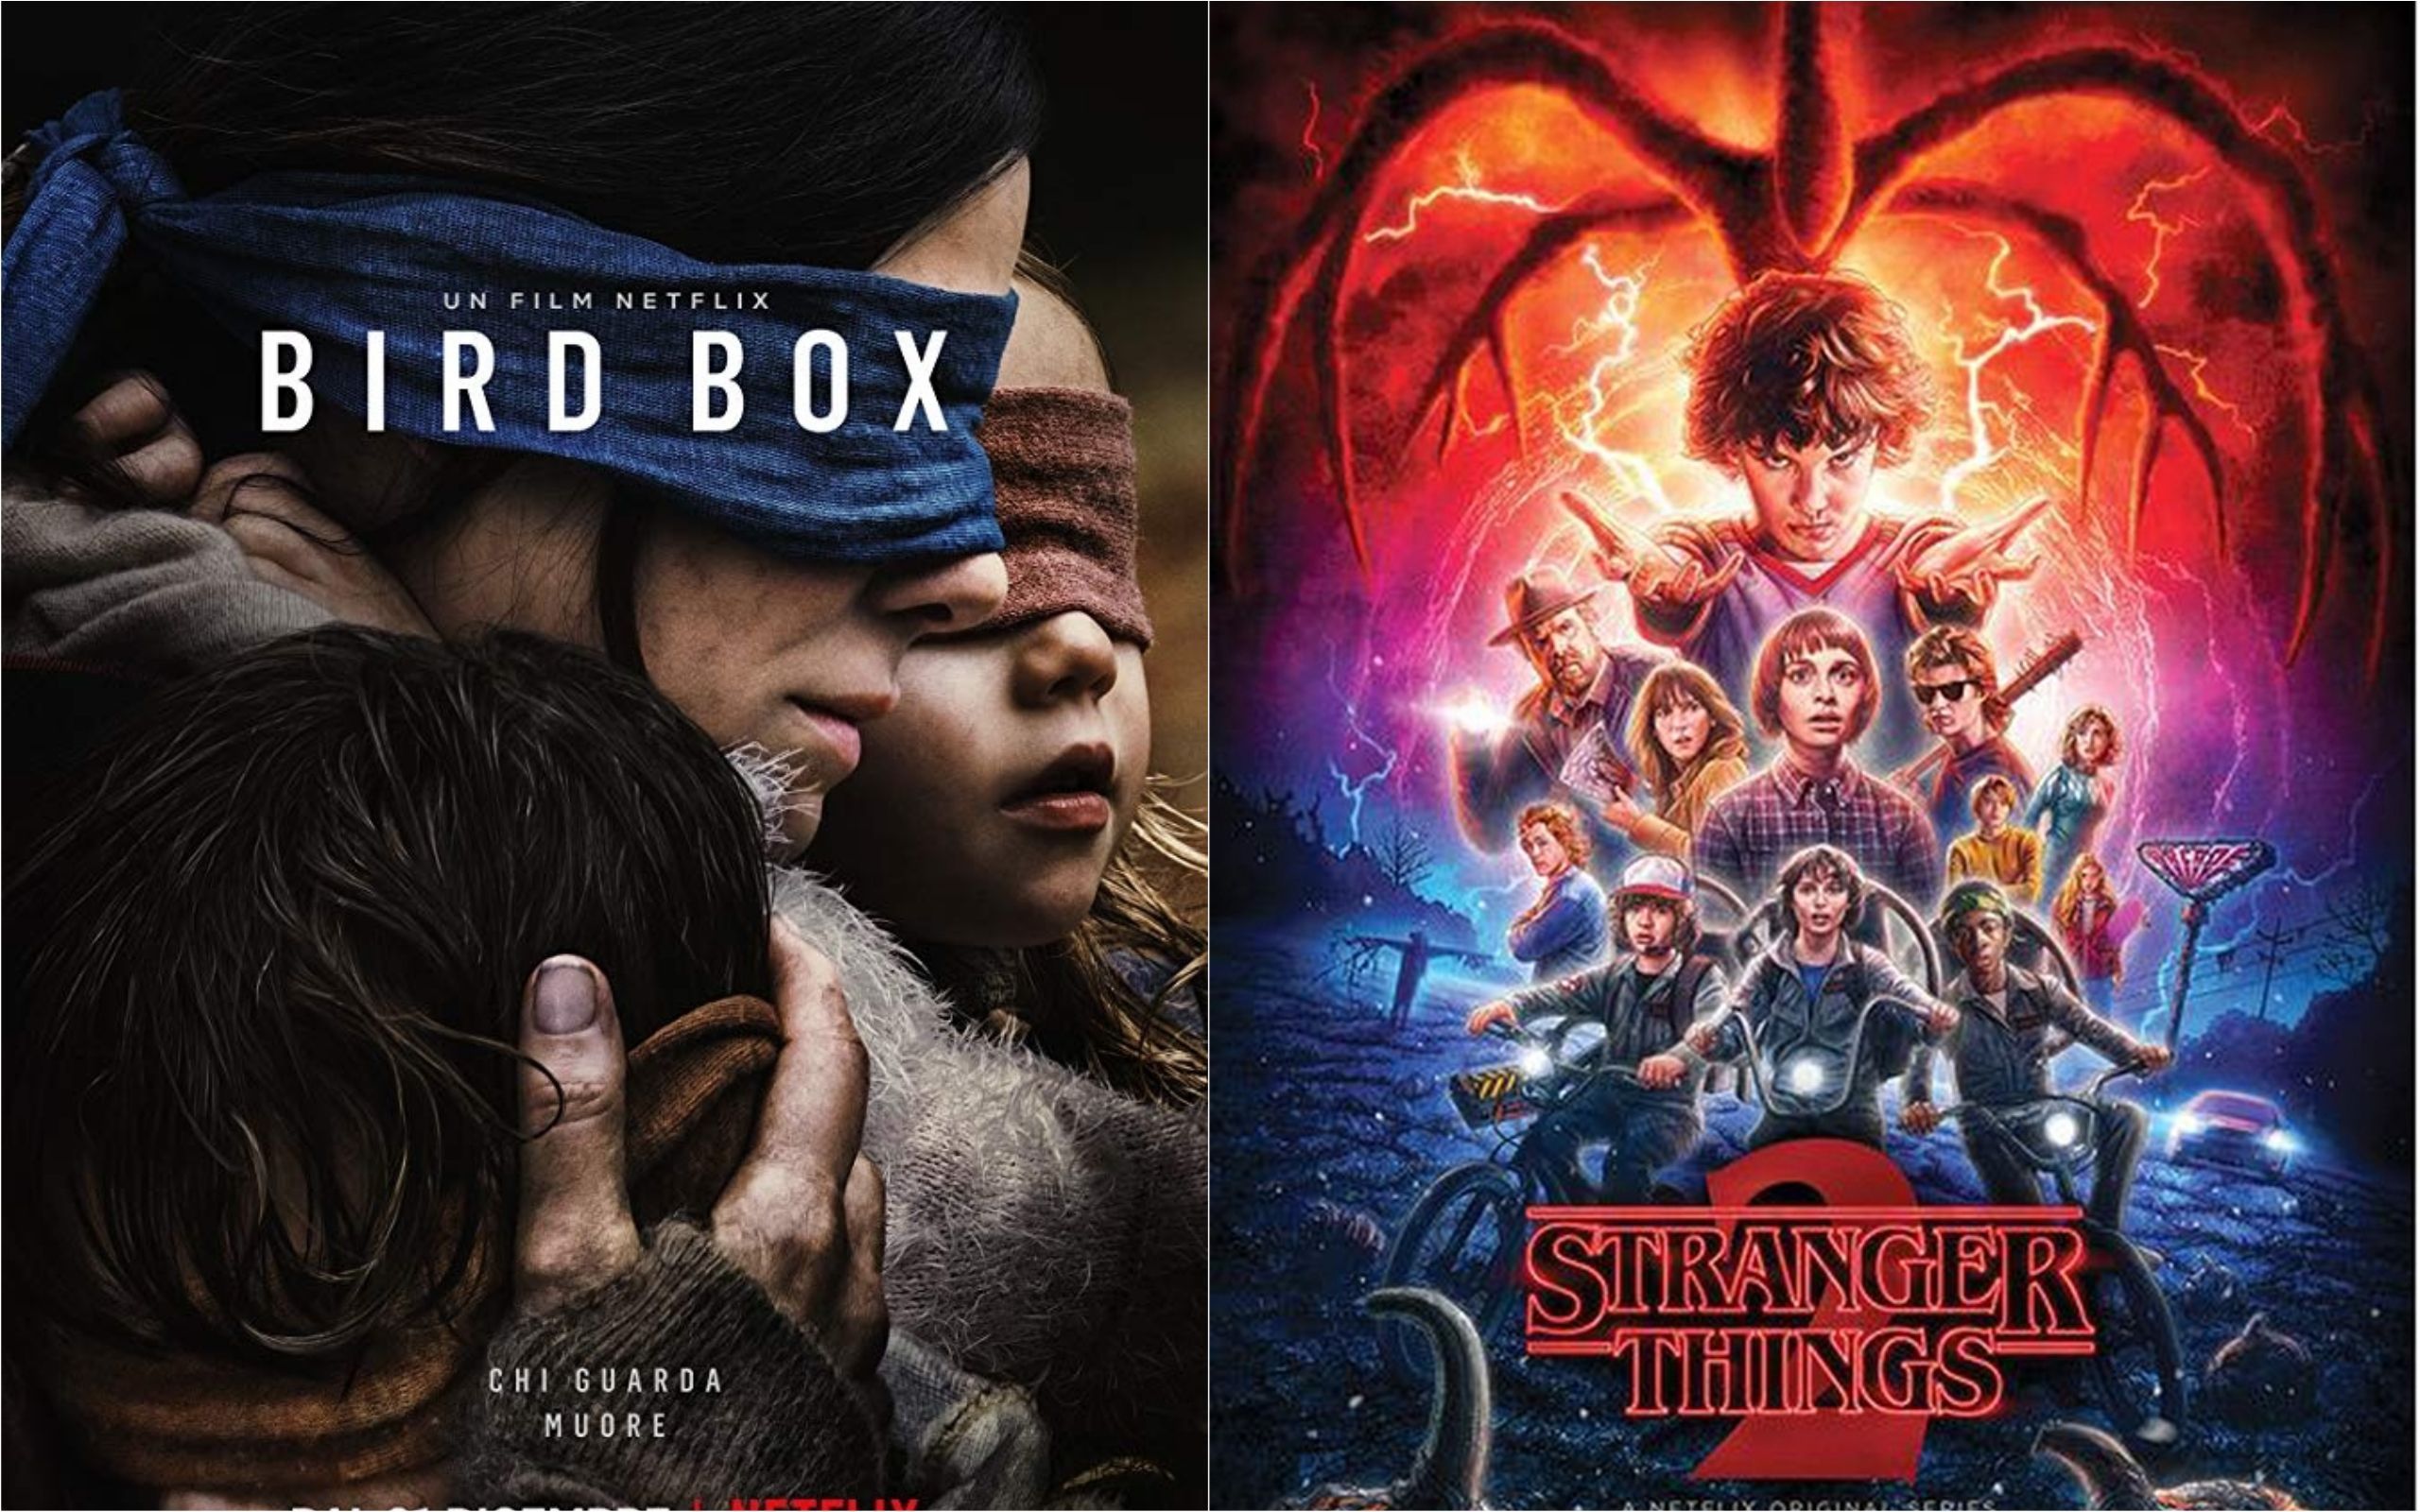 "Птичий короб", "Очень странные дела" и другие:популярные фильмы и сериалы 2019 года от Netflix 